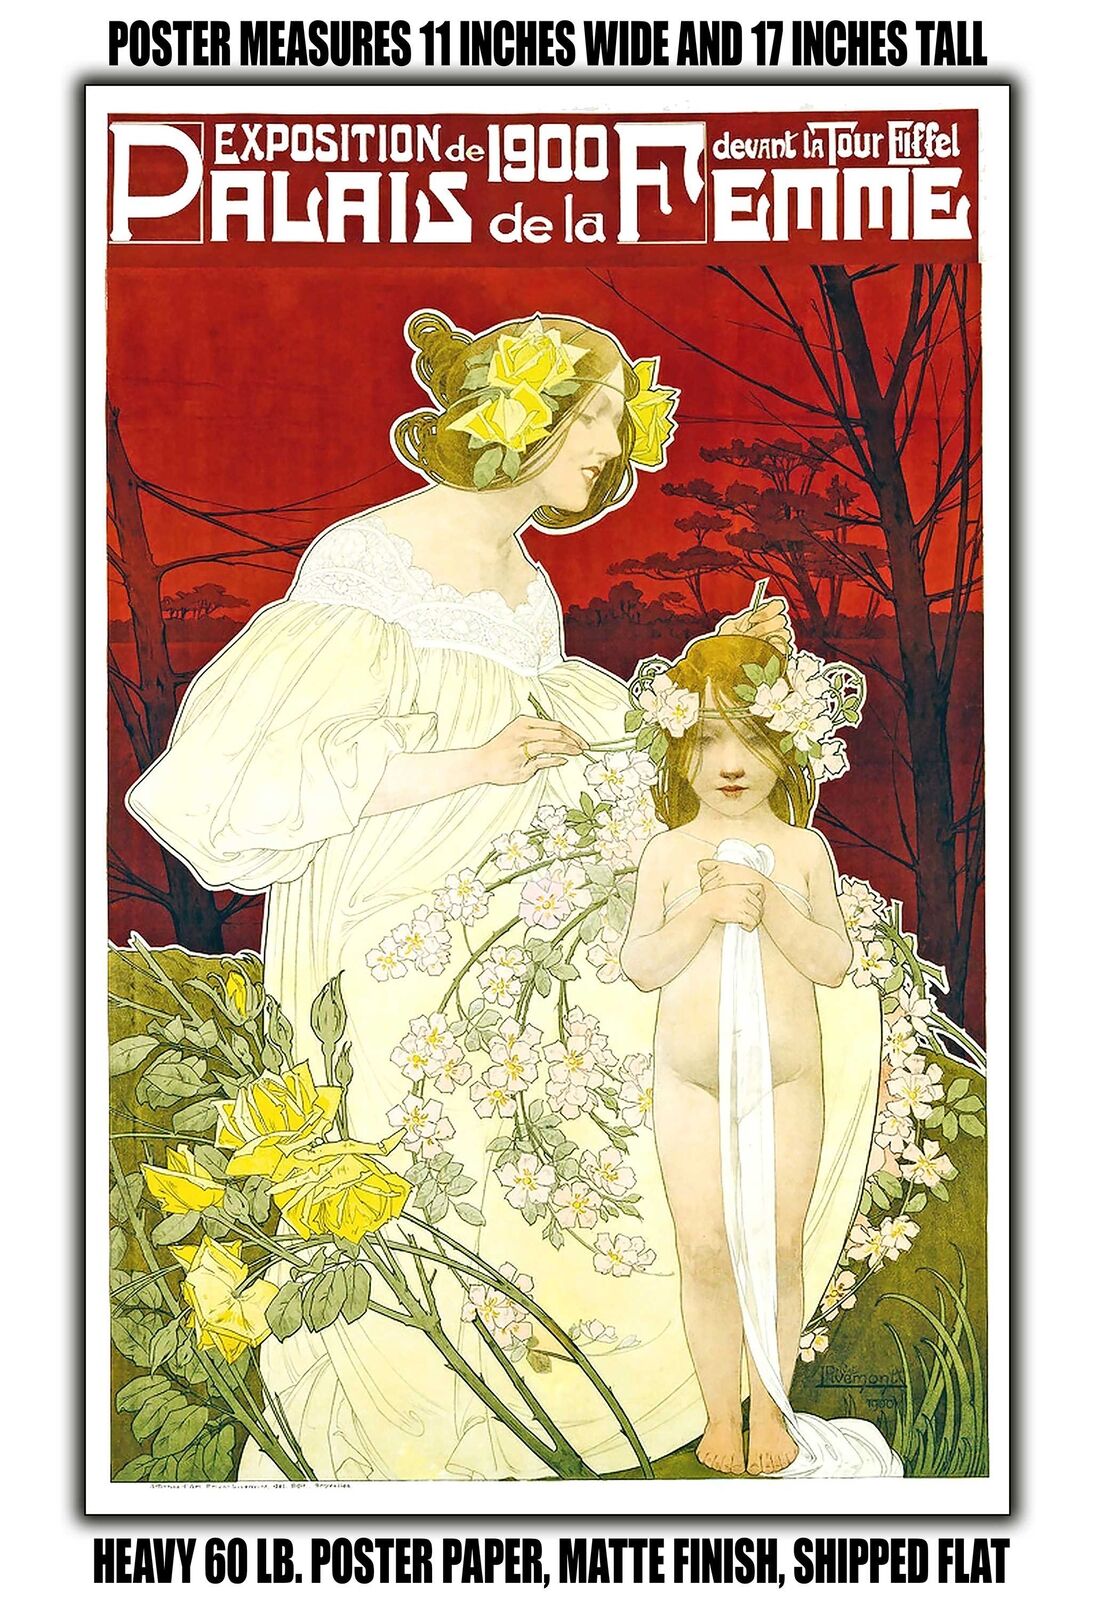 11x17 POSTER - 1900 Palais de la Femme, 1900 exhibition